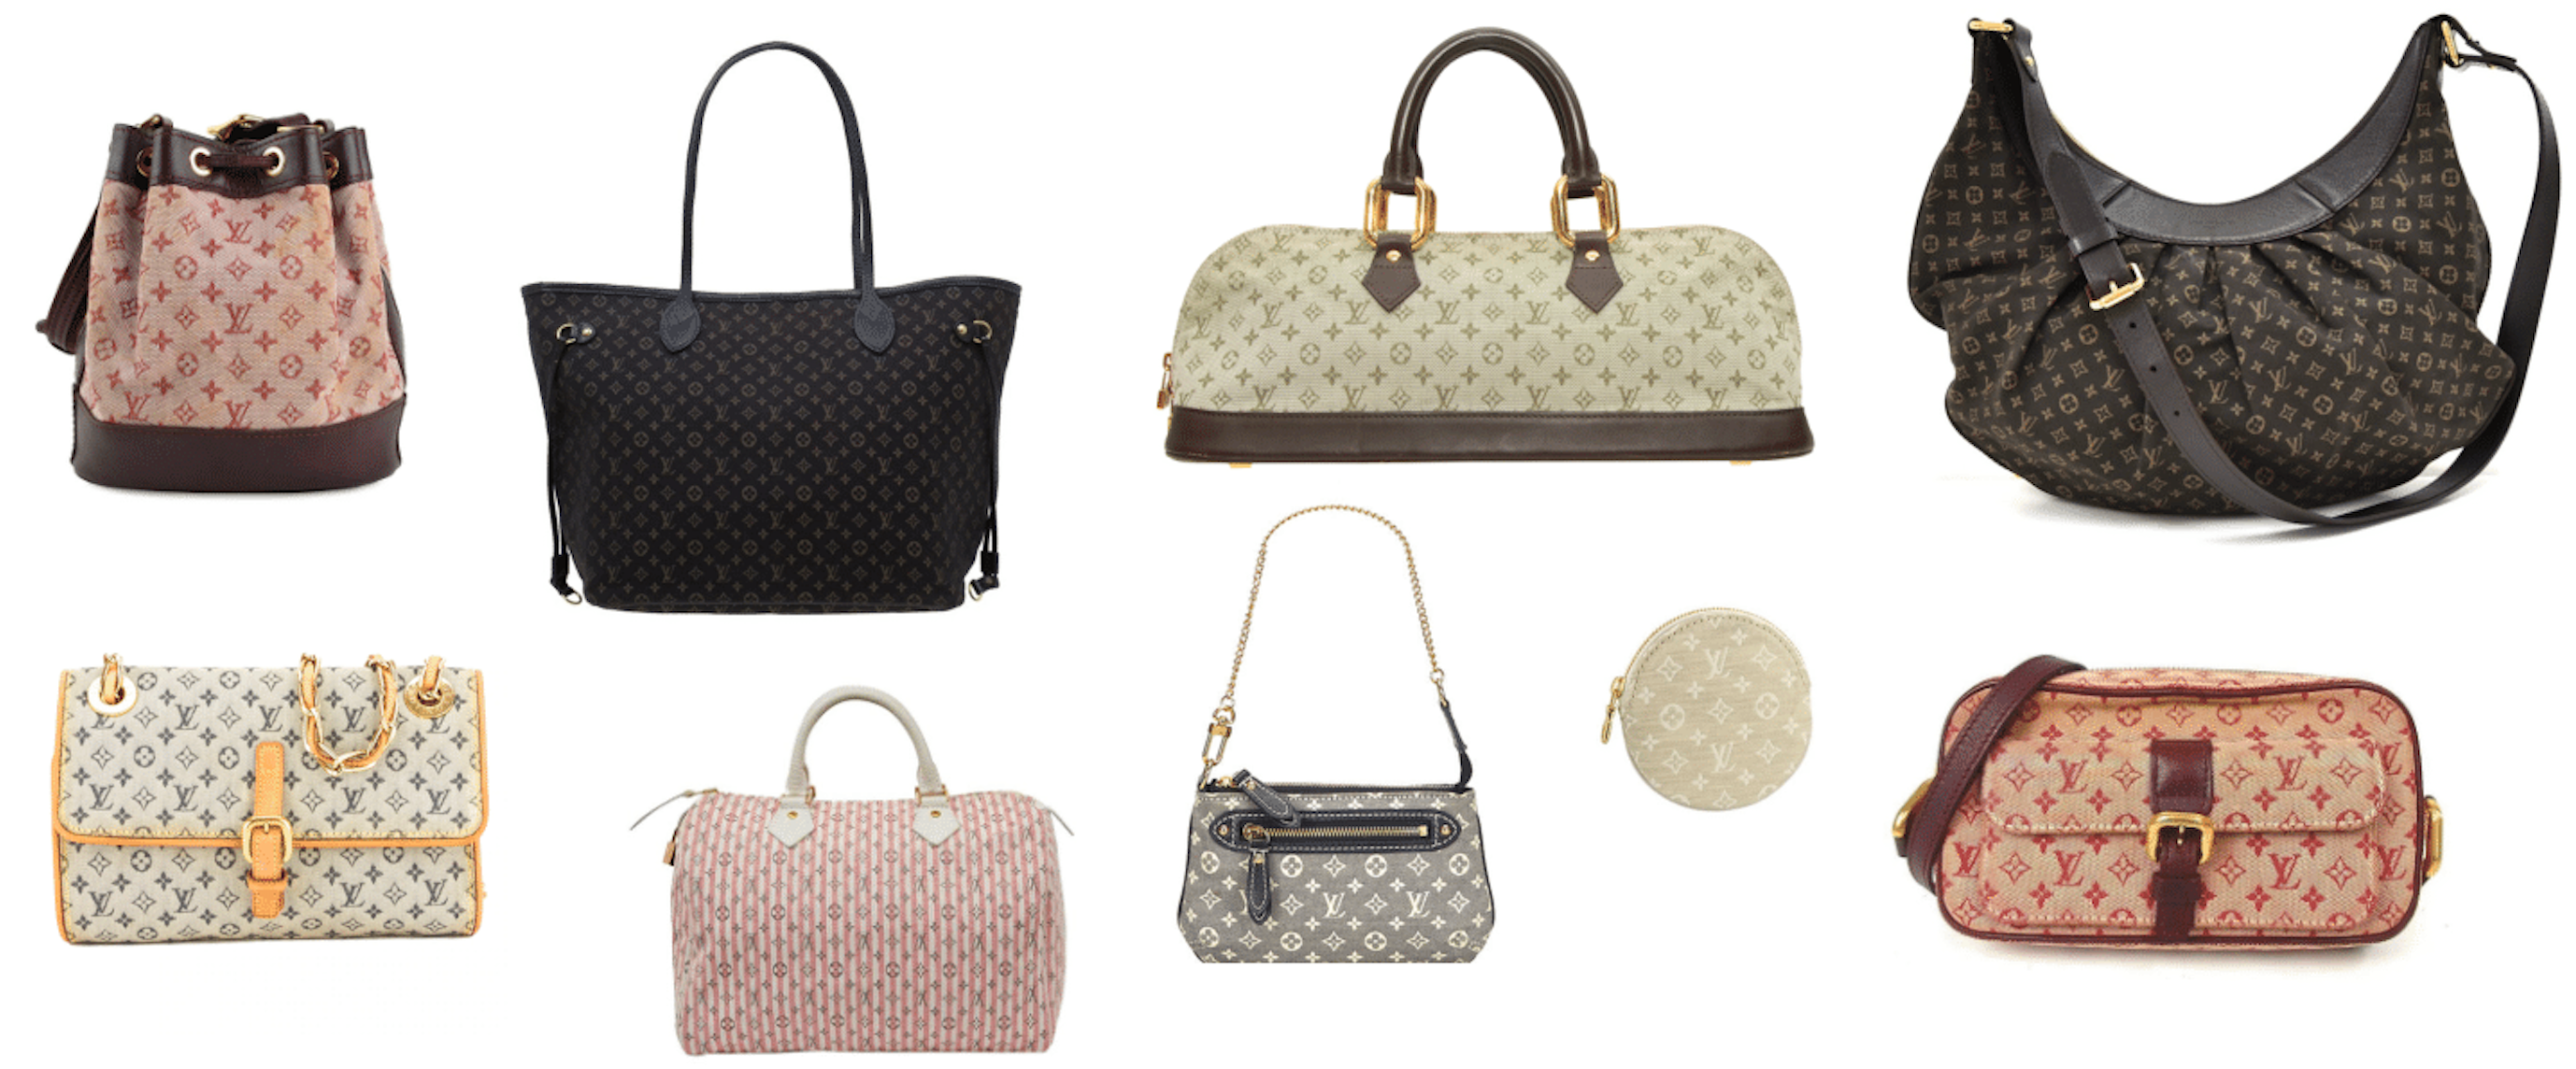 lv Fashion handbag lady bag small bag m61276 Party essential package | Small  bags, Fashion handbags, Bags